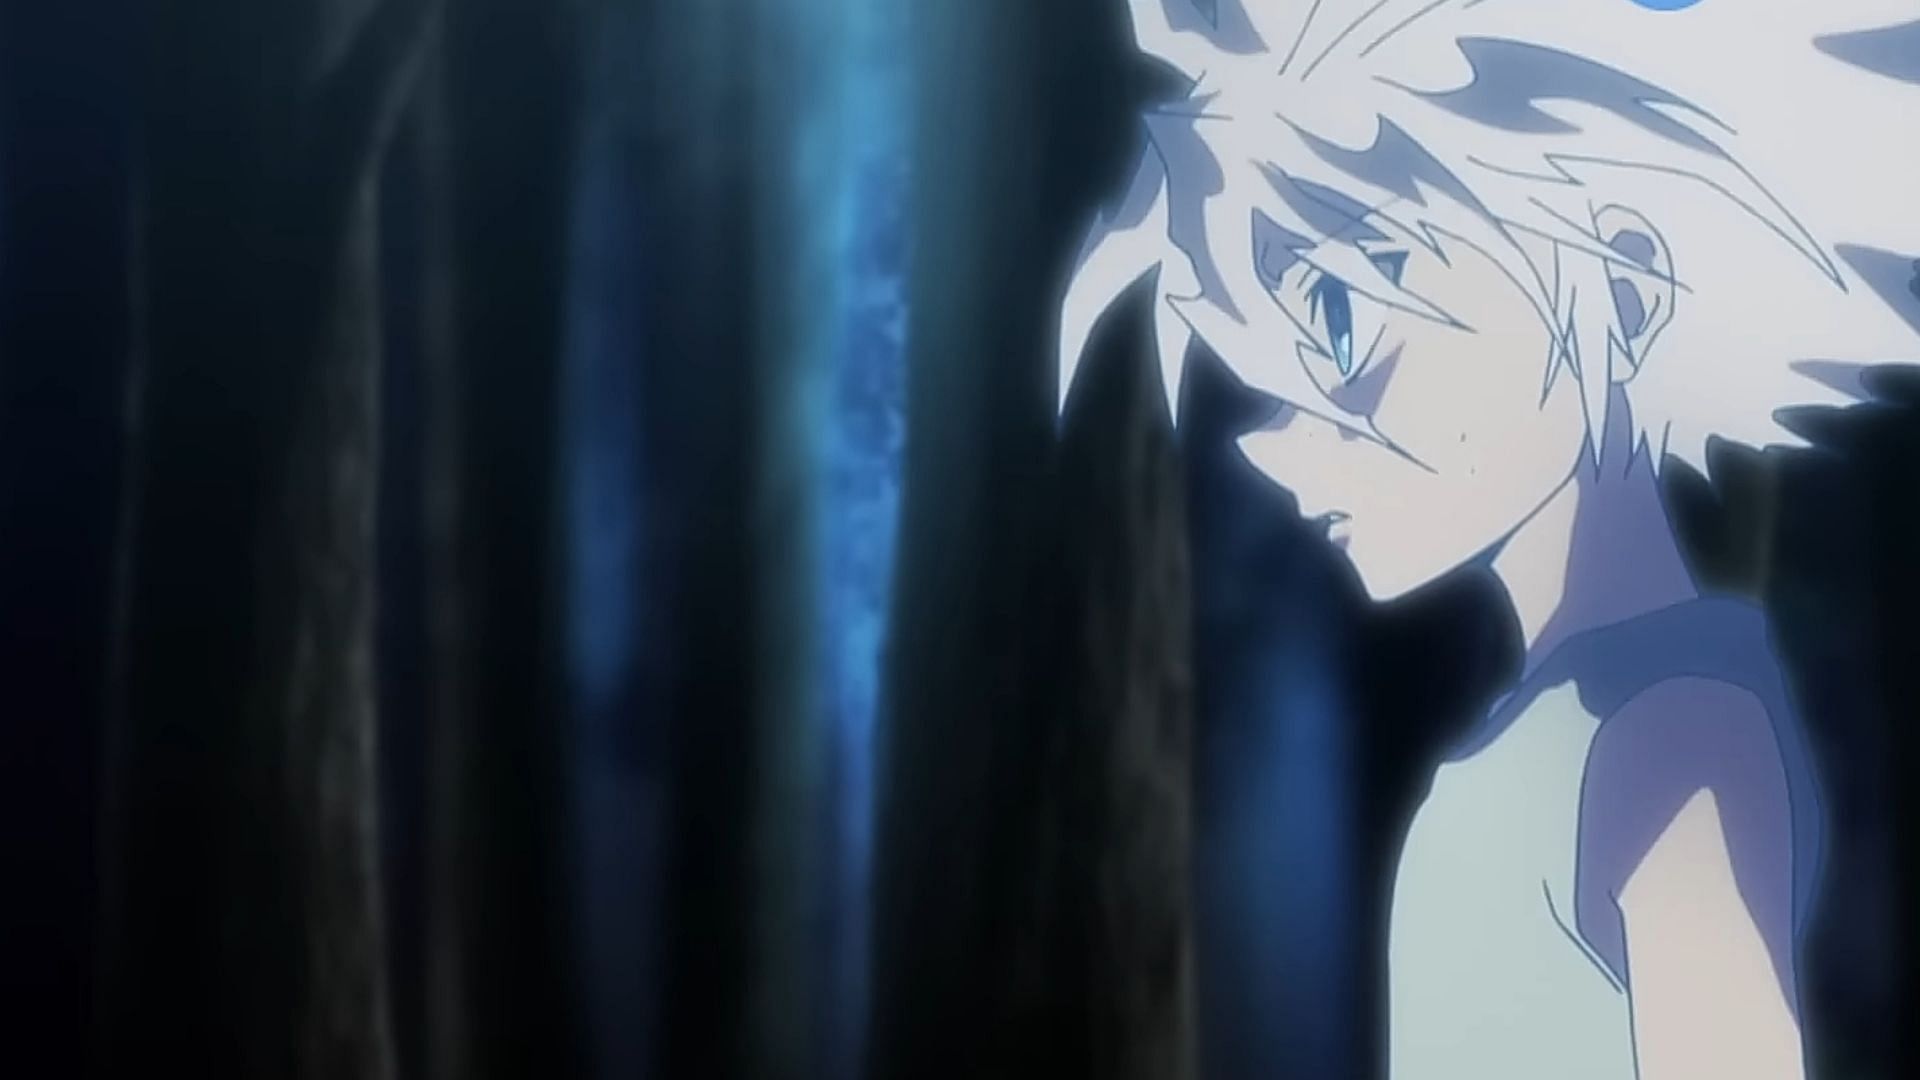 Killua as seen in the anime (Image via Madhouse)